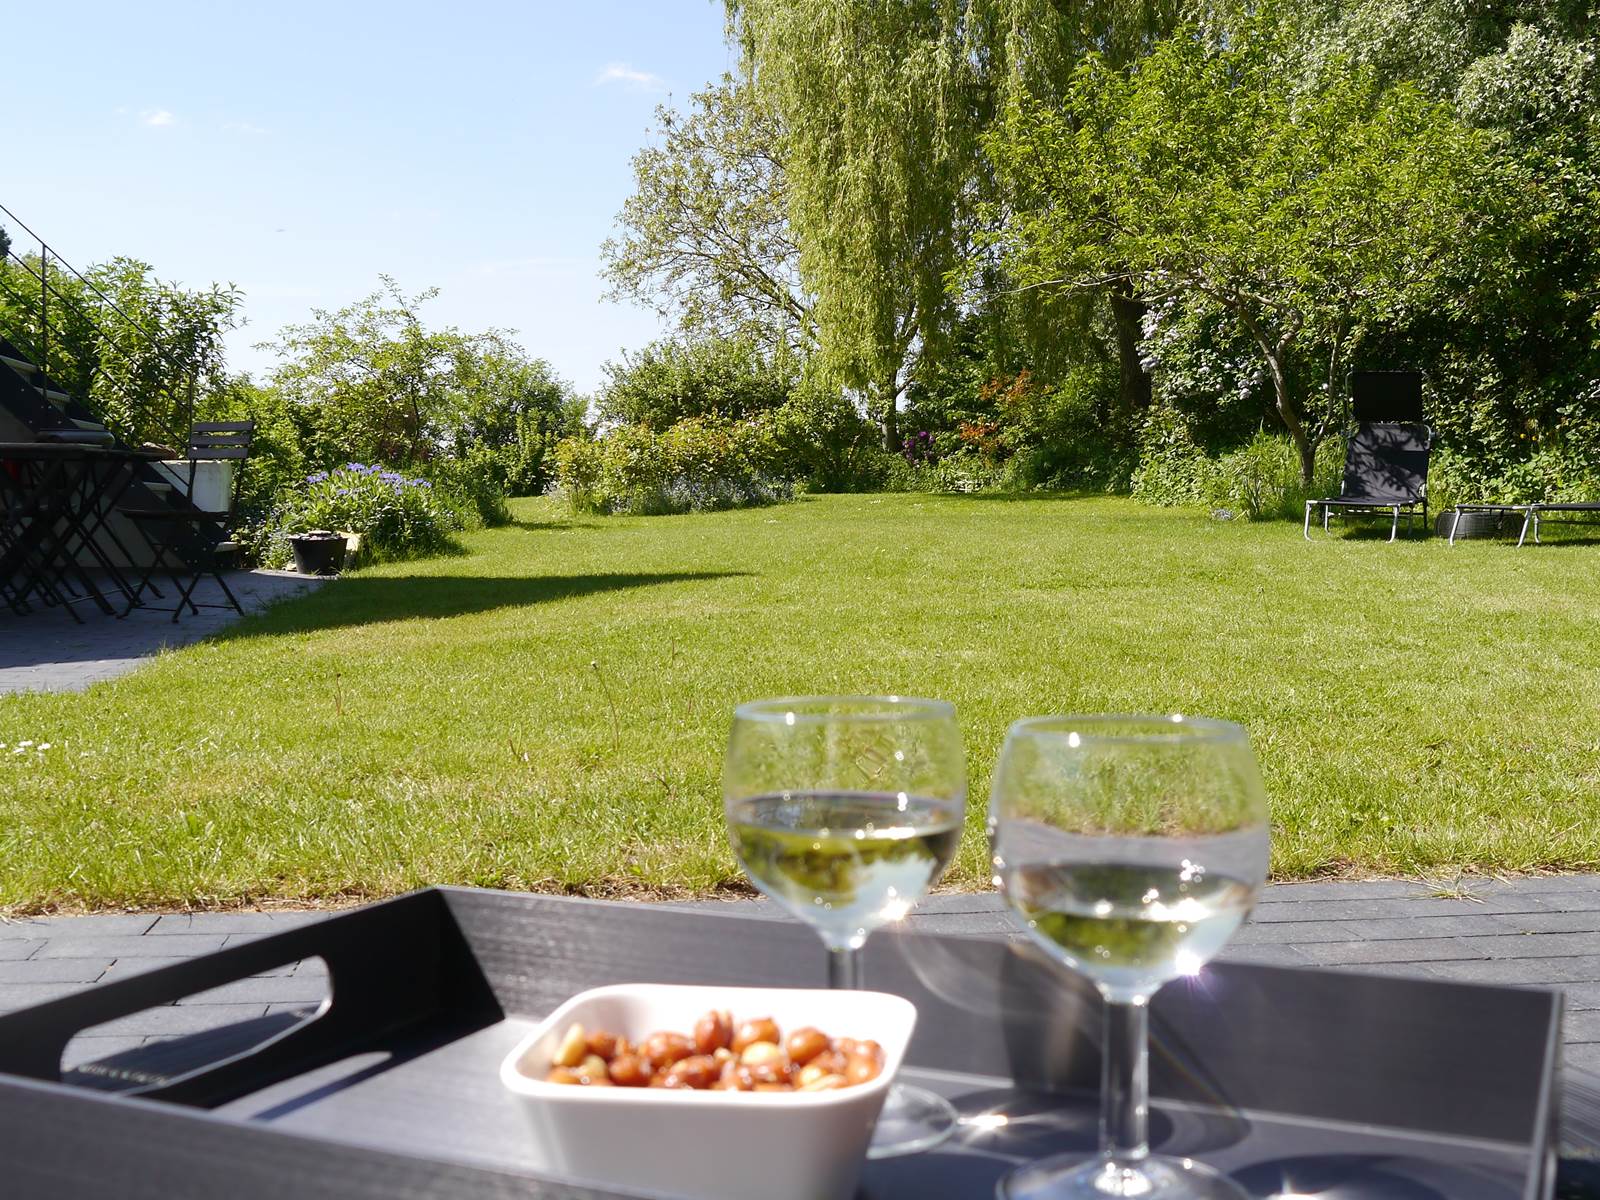 Vous pourrez vous détendre sur la terrasse face au spectacle du jardin en sirotant un apéritif ou en prenant un bain de soleil